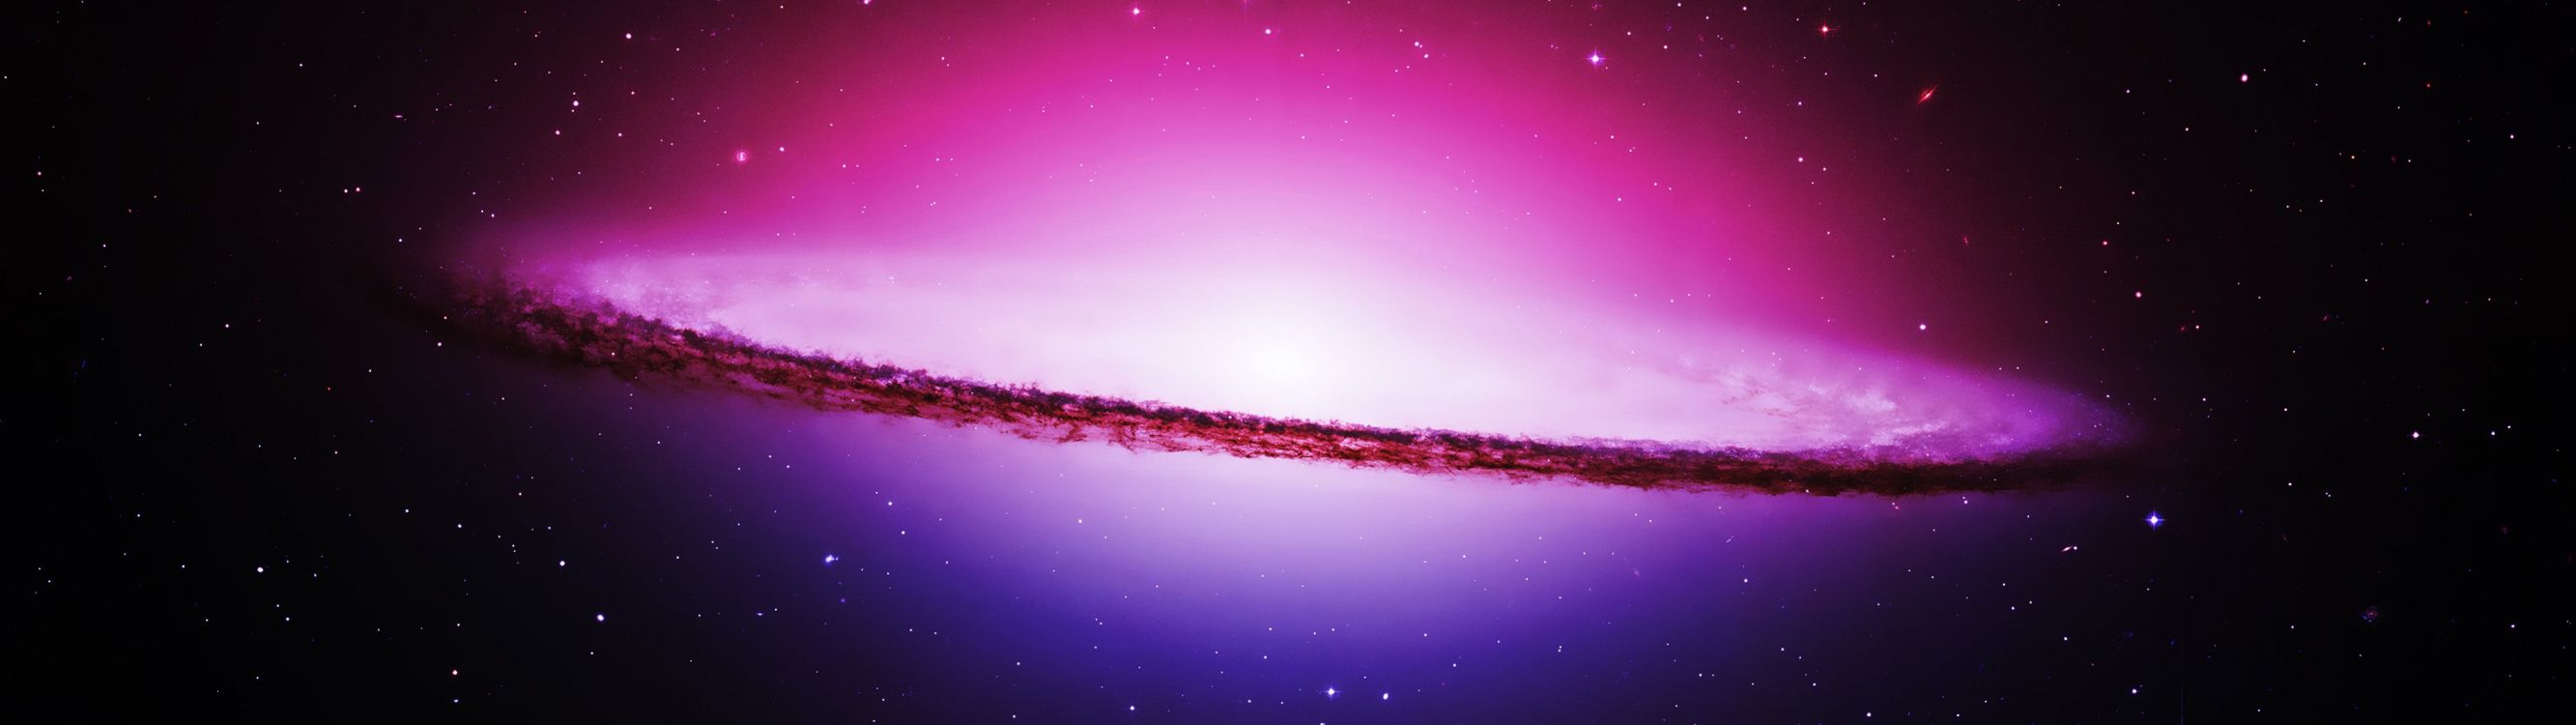 紫色的, 气氛, 天文学对象, 空间, 宇宙 壁纸 3840x1080 允许